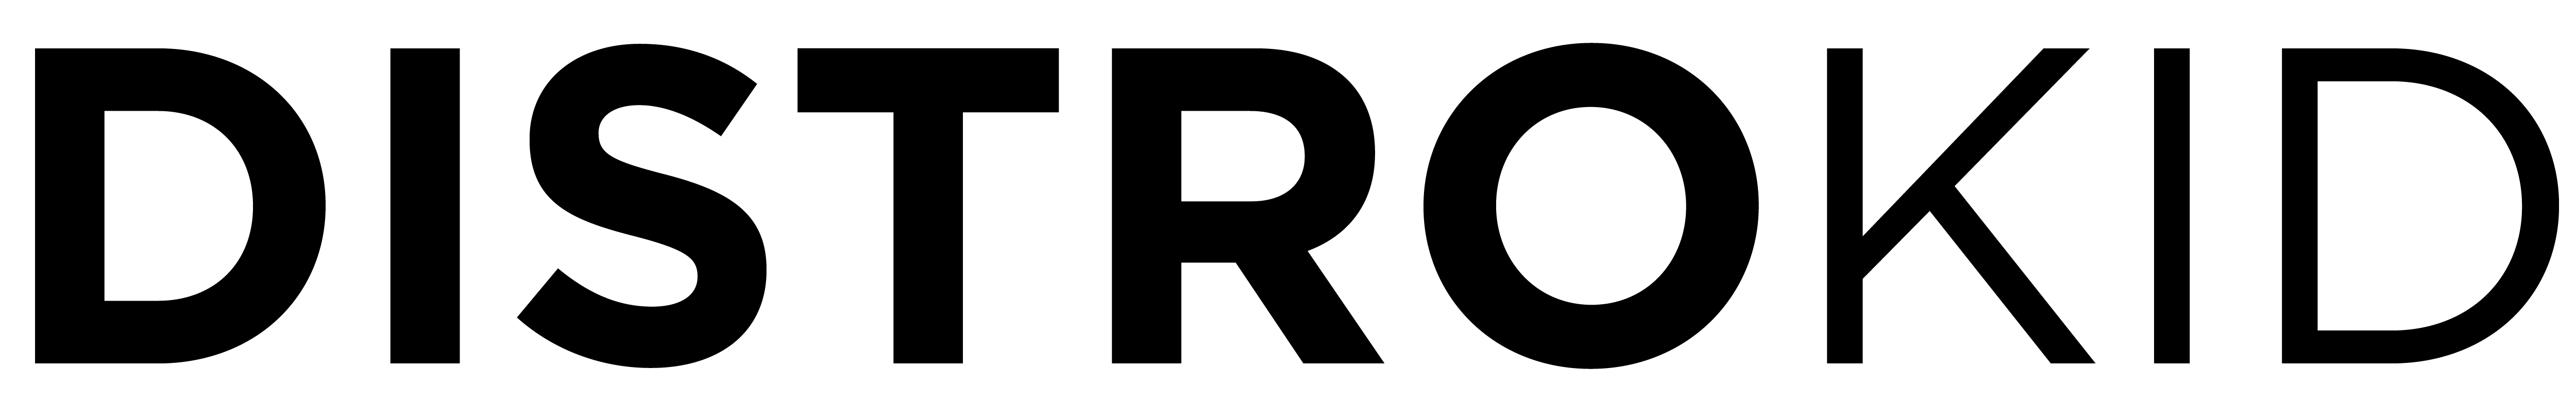 Logo DistroKid en noir